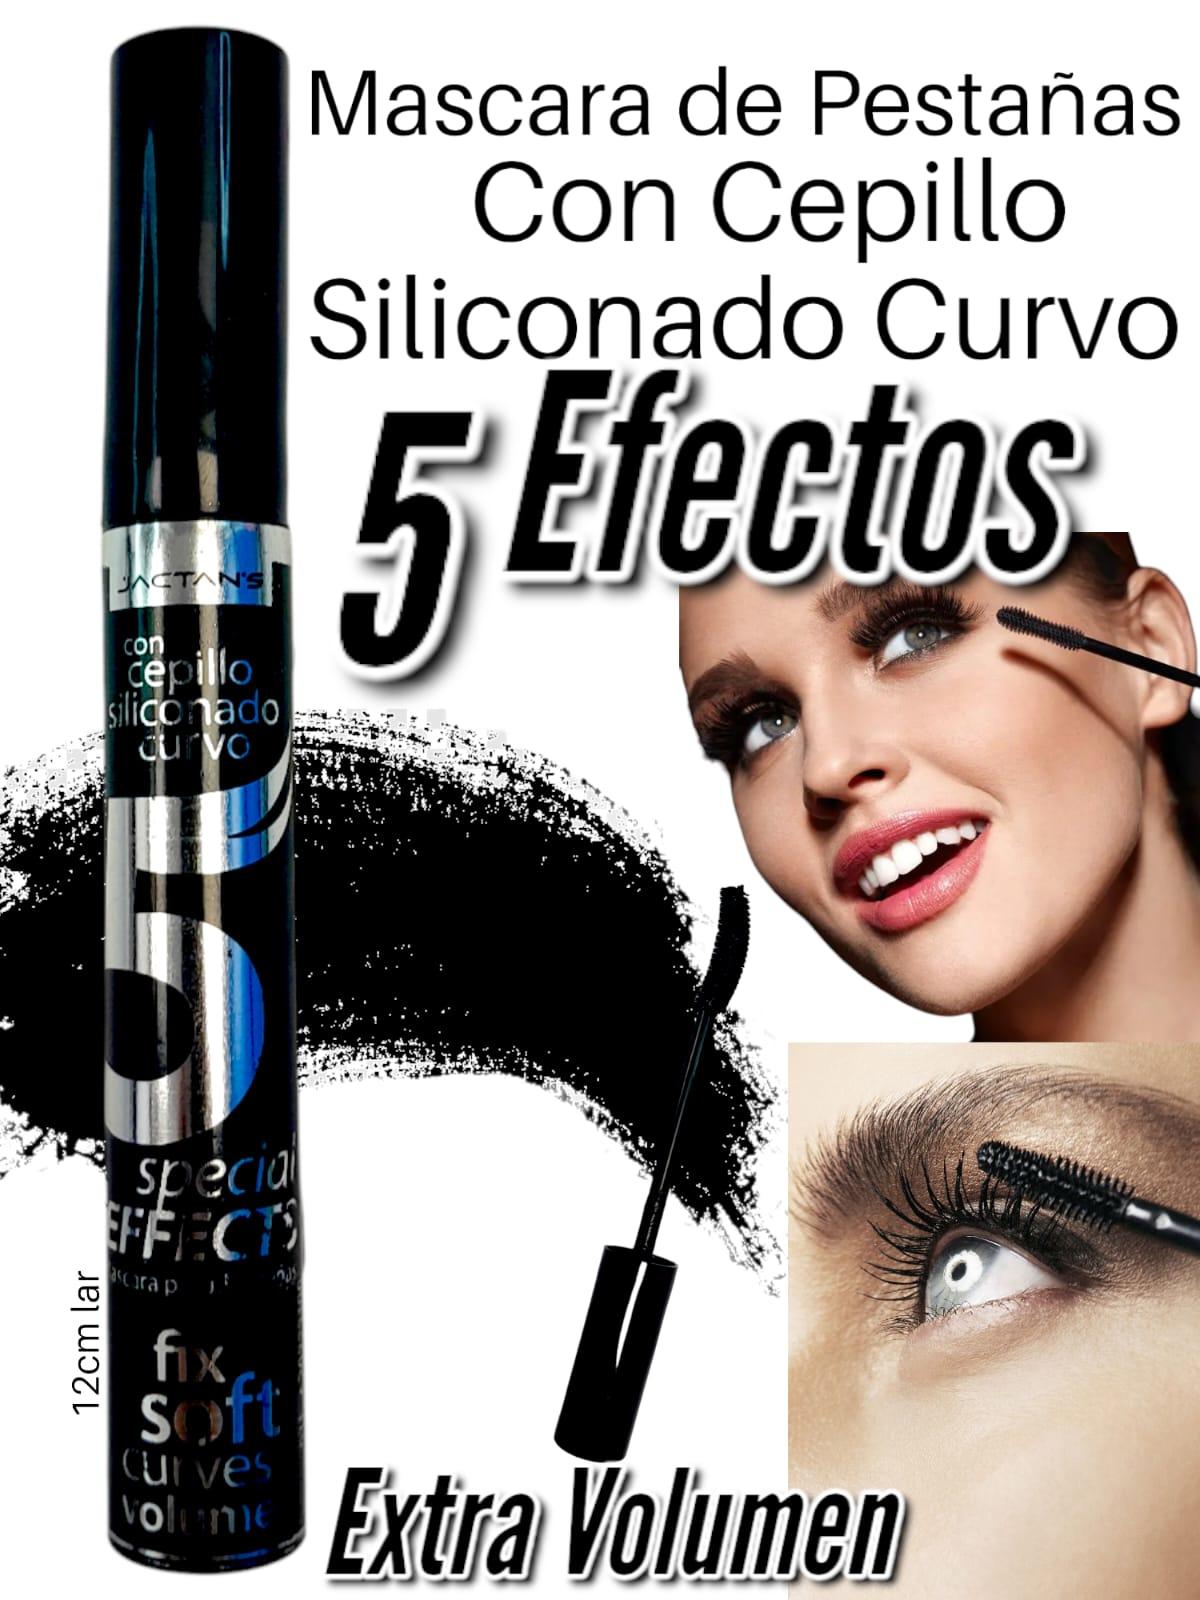 Mascara Silicona 5 Efectos con cepillo siliconado curvo- resistente al agua